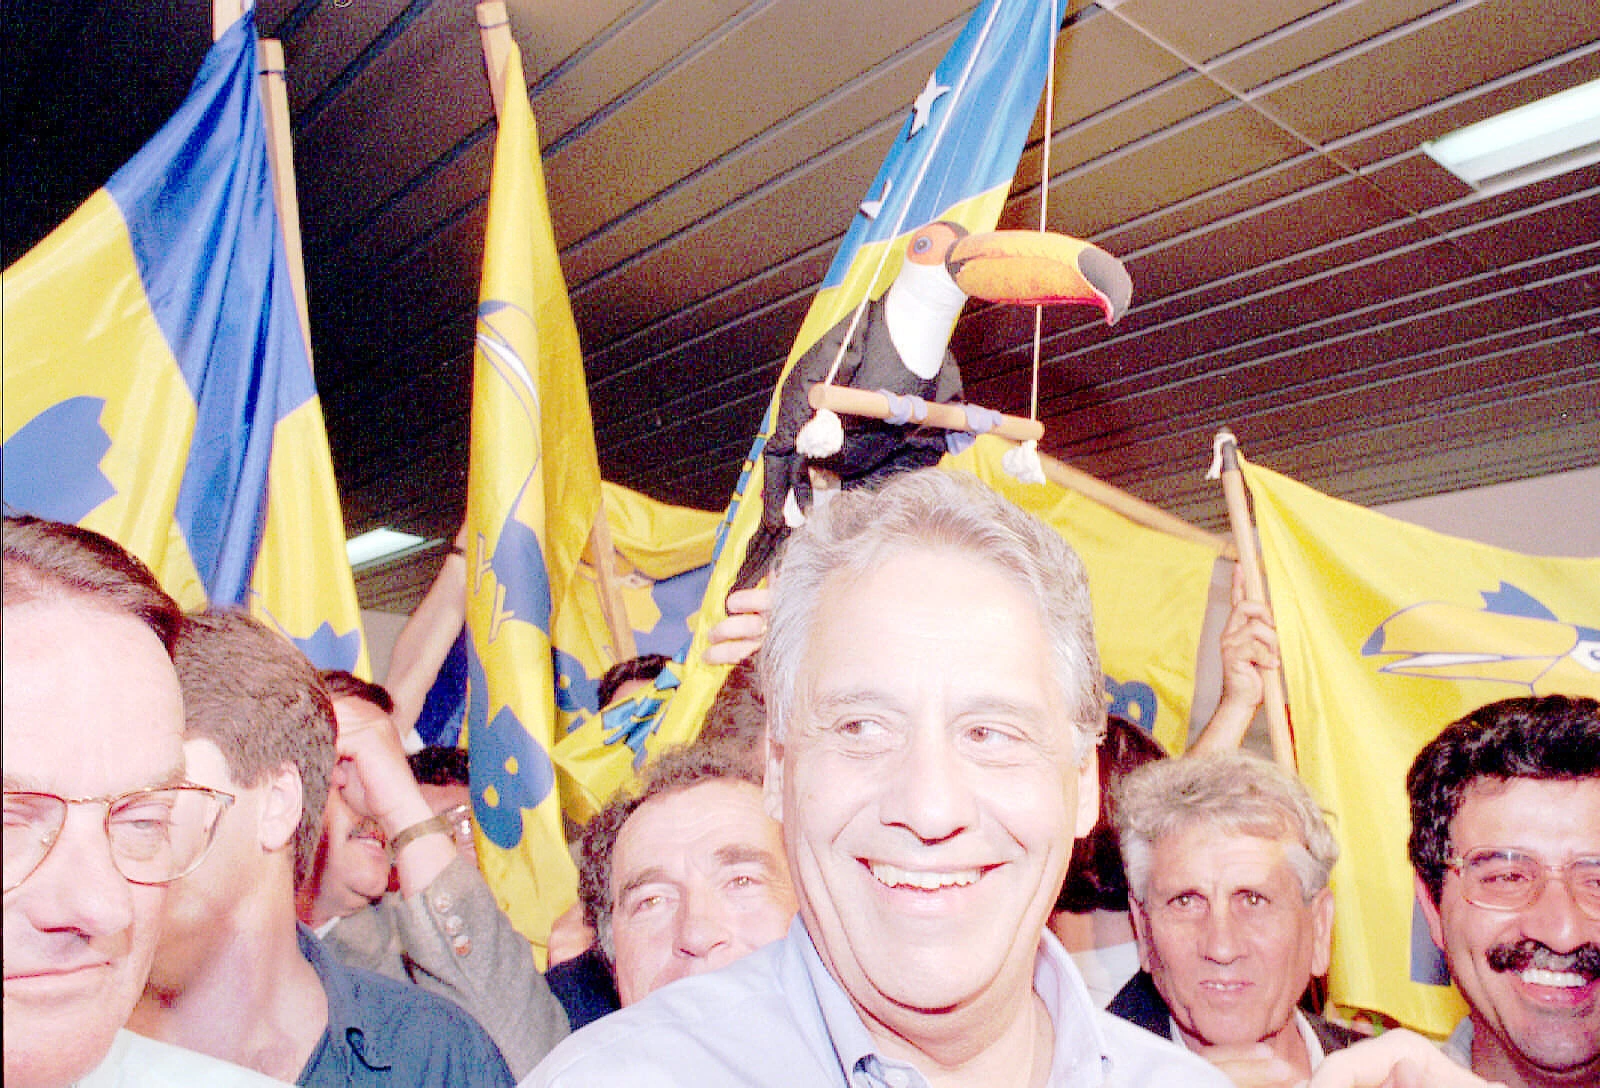 Eleição presidencial: Fernando Henrique Cardoso [PSDB-PFL] durante campanha em Florianópolis. [FSP-Brasil-Supereleição-27.08.94]*** NÃO UTILIZAR SEM ANTES CHECAR CRÉDITO E LEGENDA*** (Crédito: Ormuzd Alves/Folhapress)